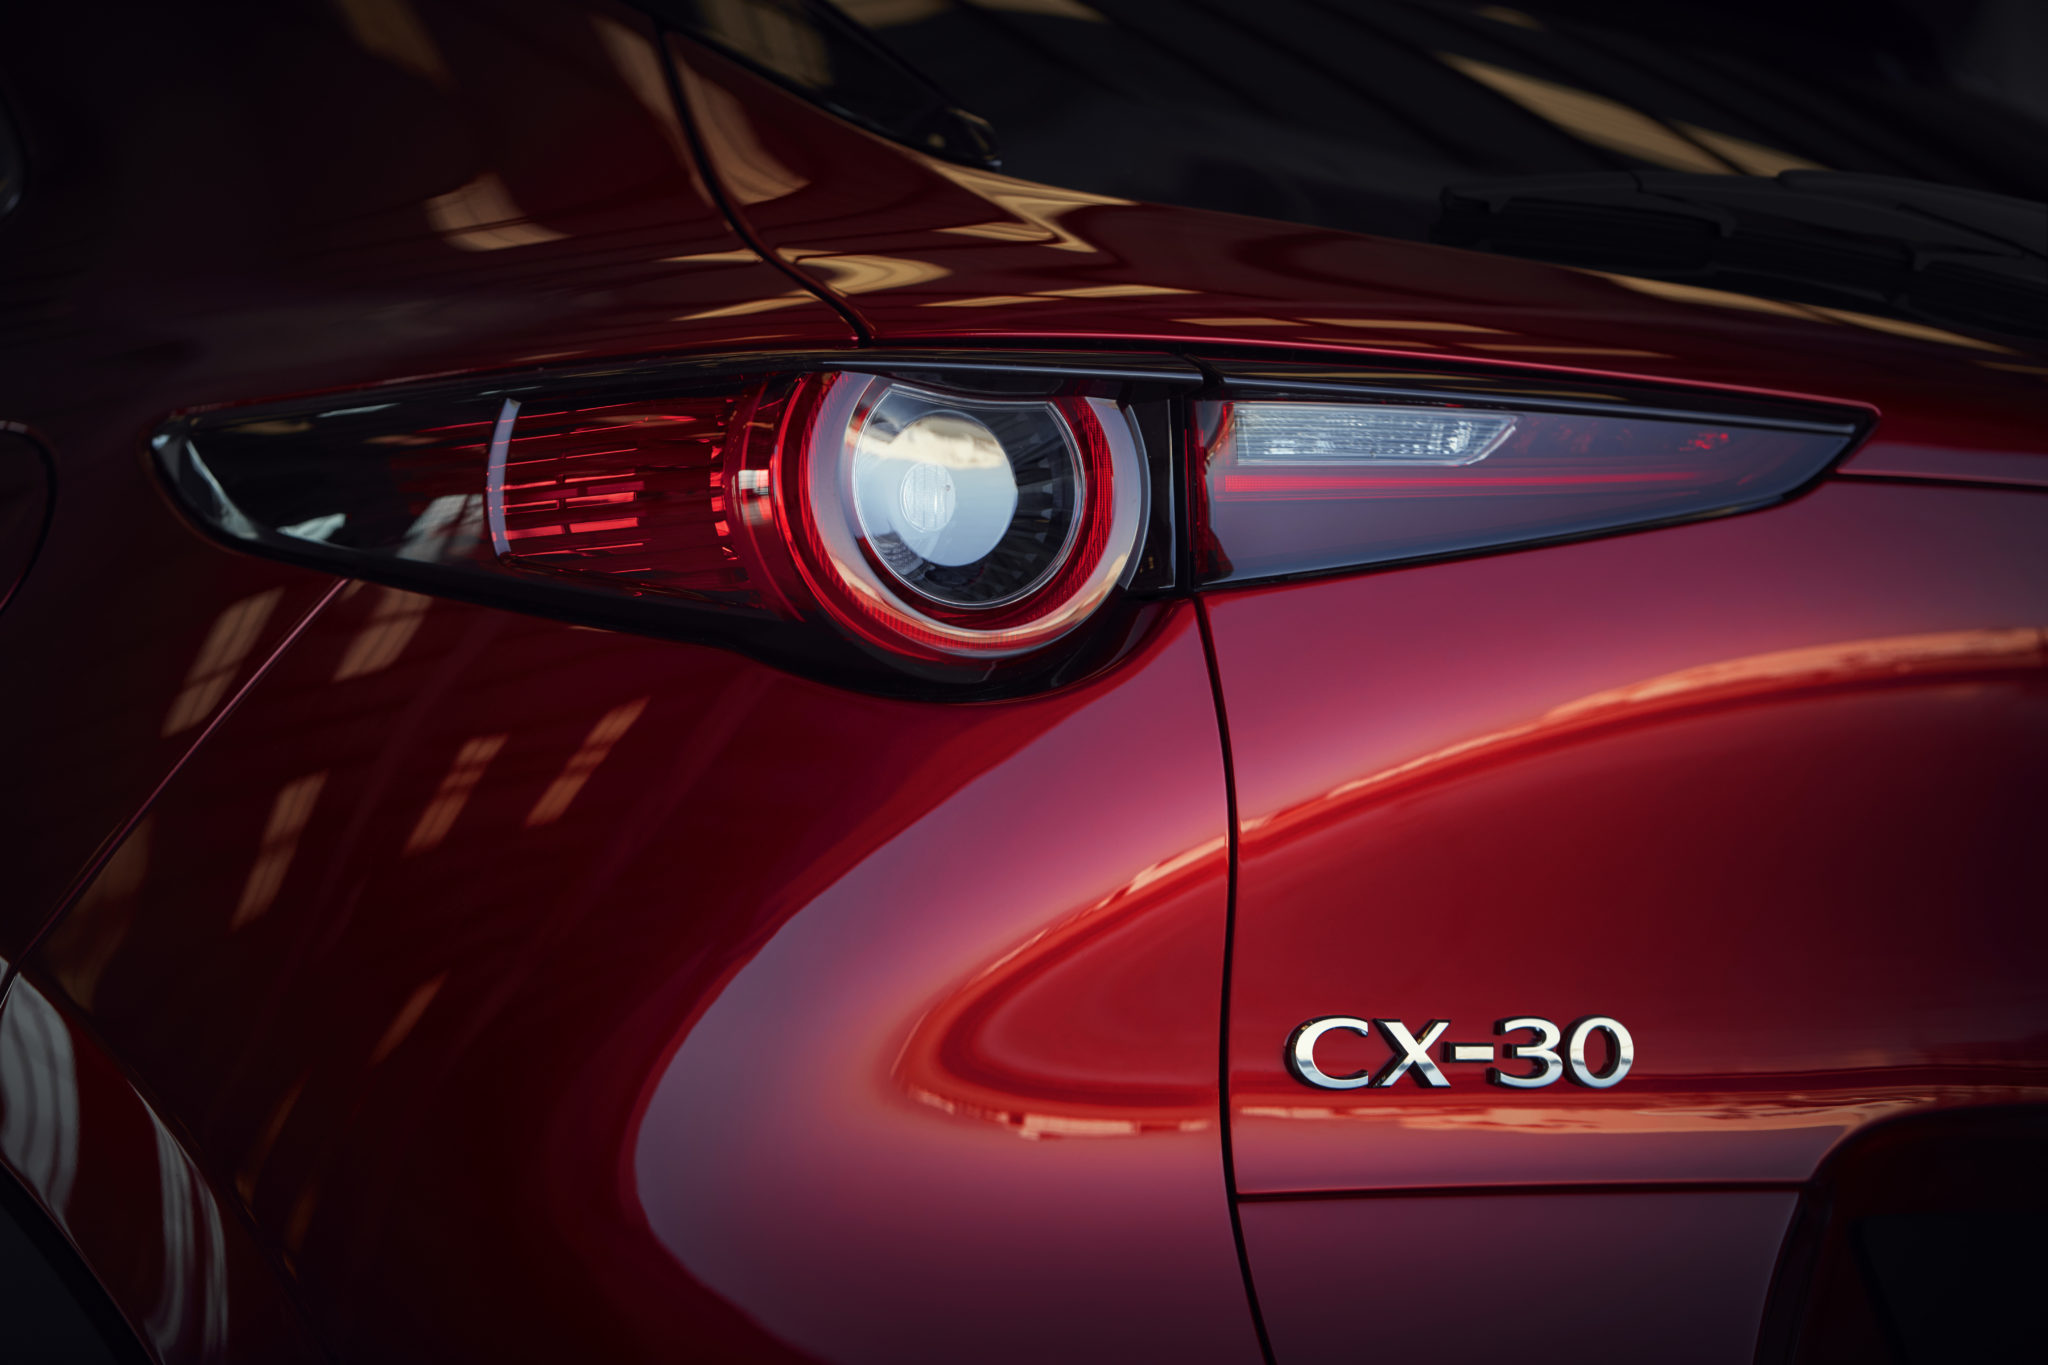 Mazda CX 30 at 2019GIMS 15 - Mazda completa su gama con el nuevo Mazda CX-30